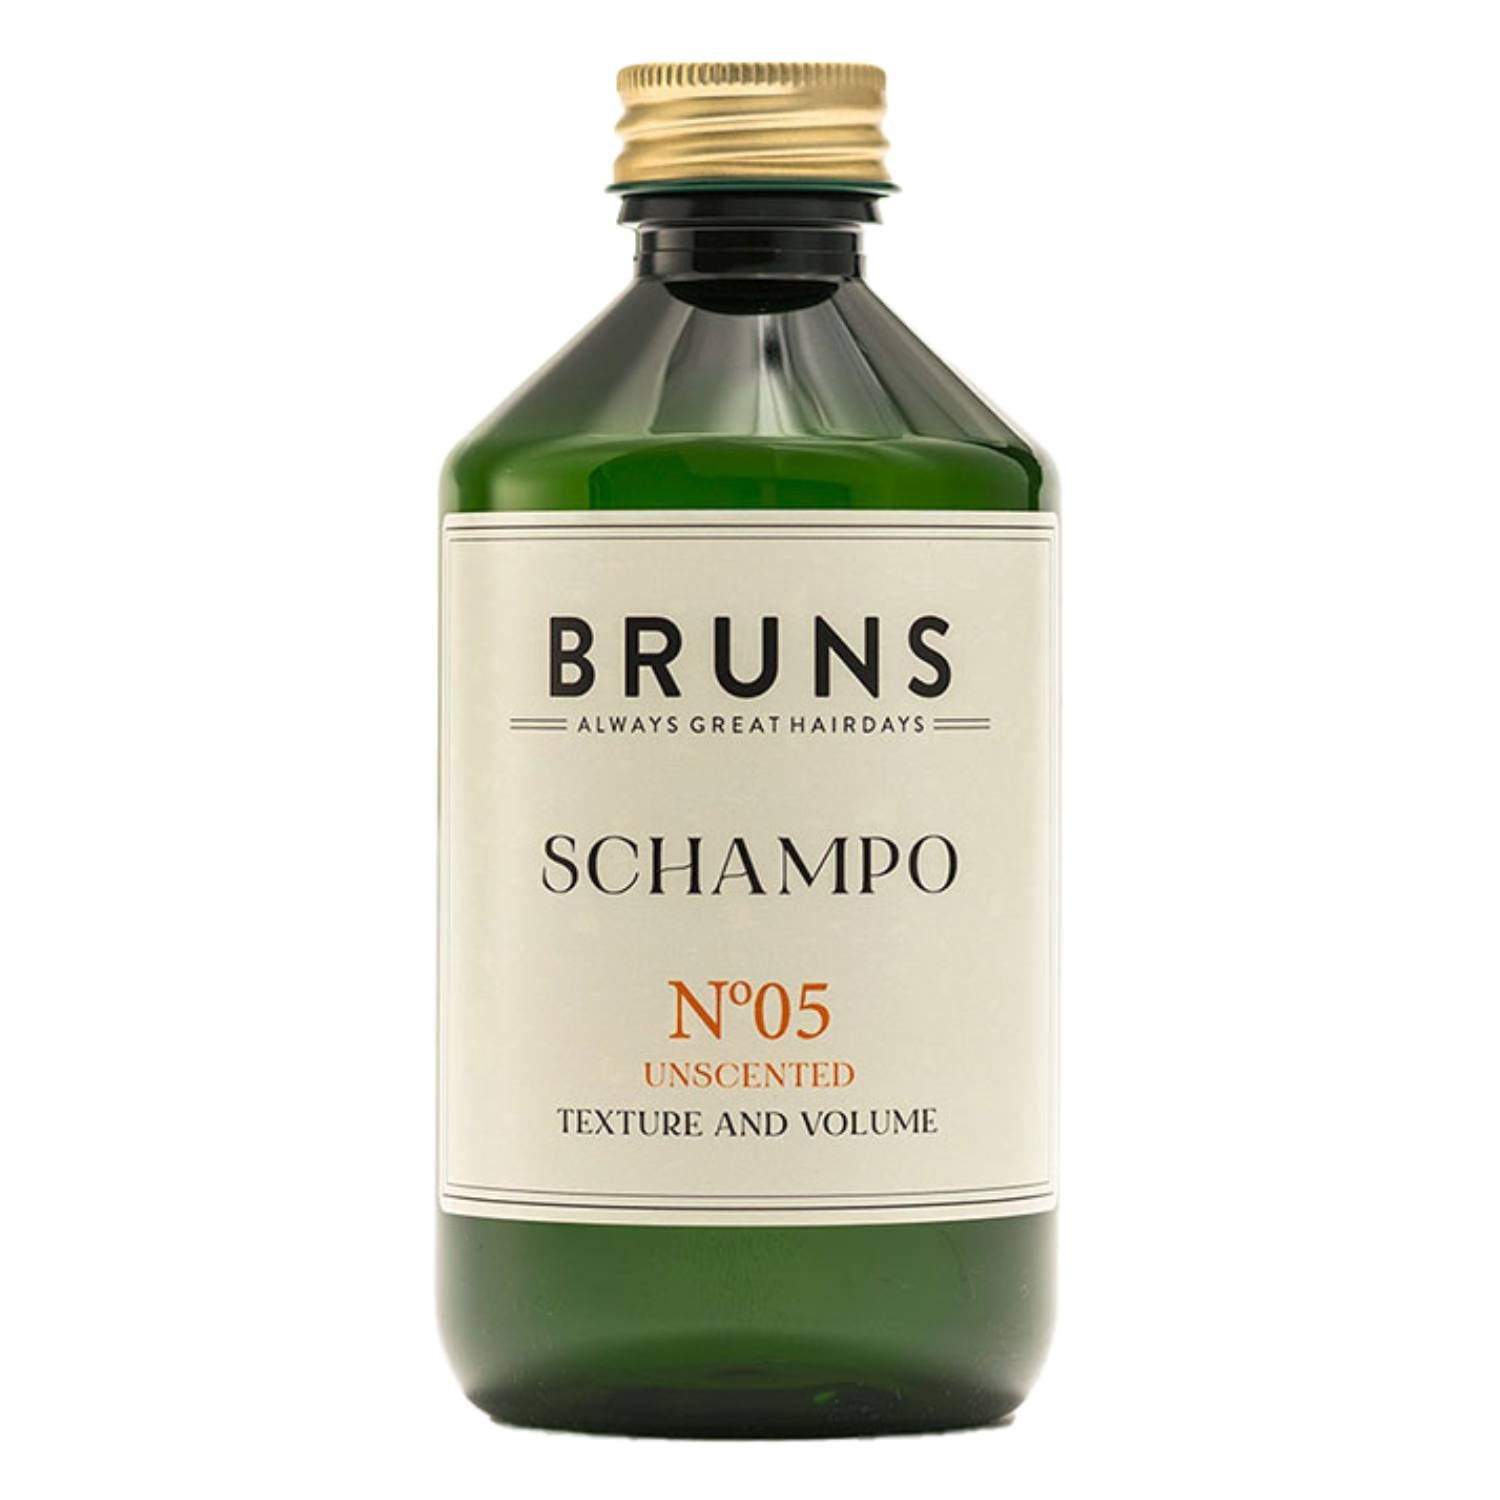 Shampoo Bruns Nº 05, 300 ml.